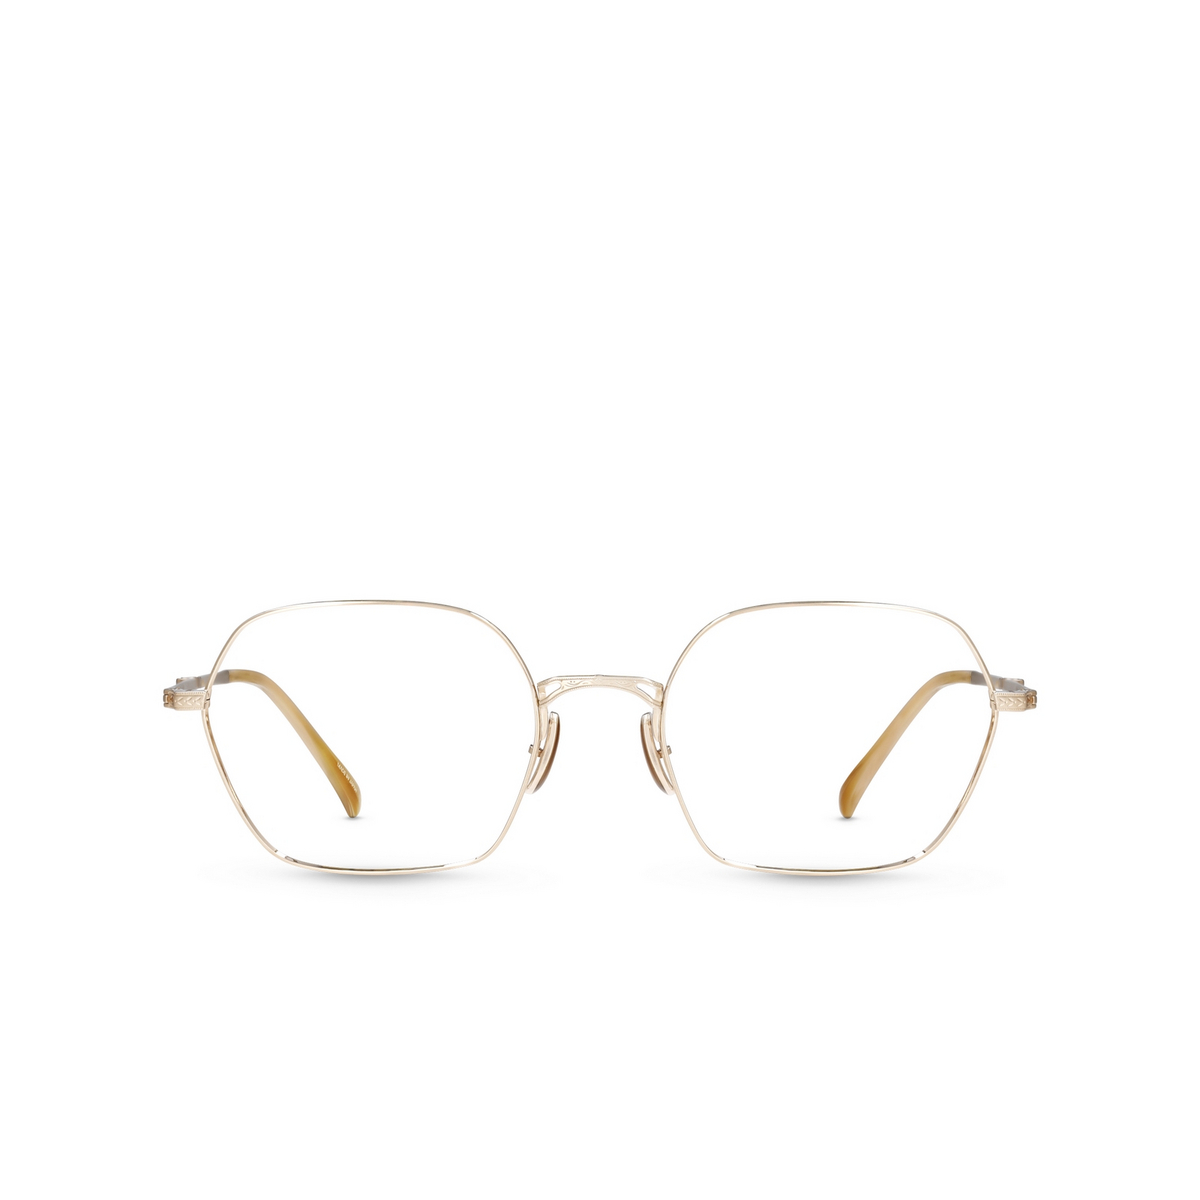 Mr. Leight SHI C Eyeglasses 12KMWG-MNSTN 12K Matte White Gold-Moonstone - front view